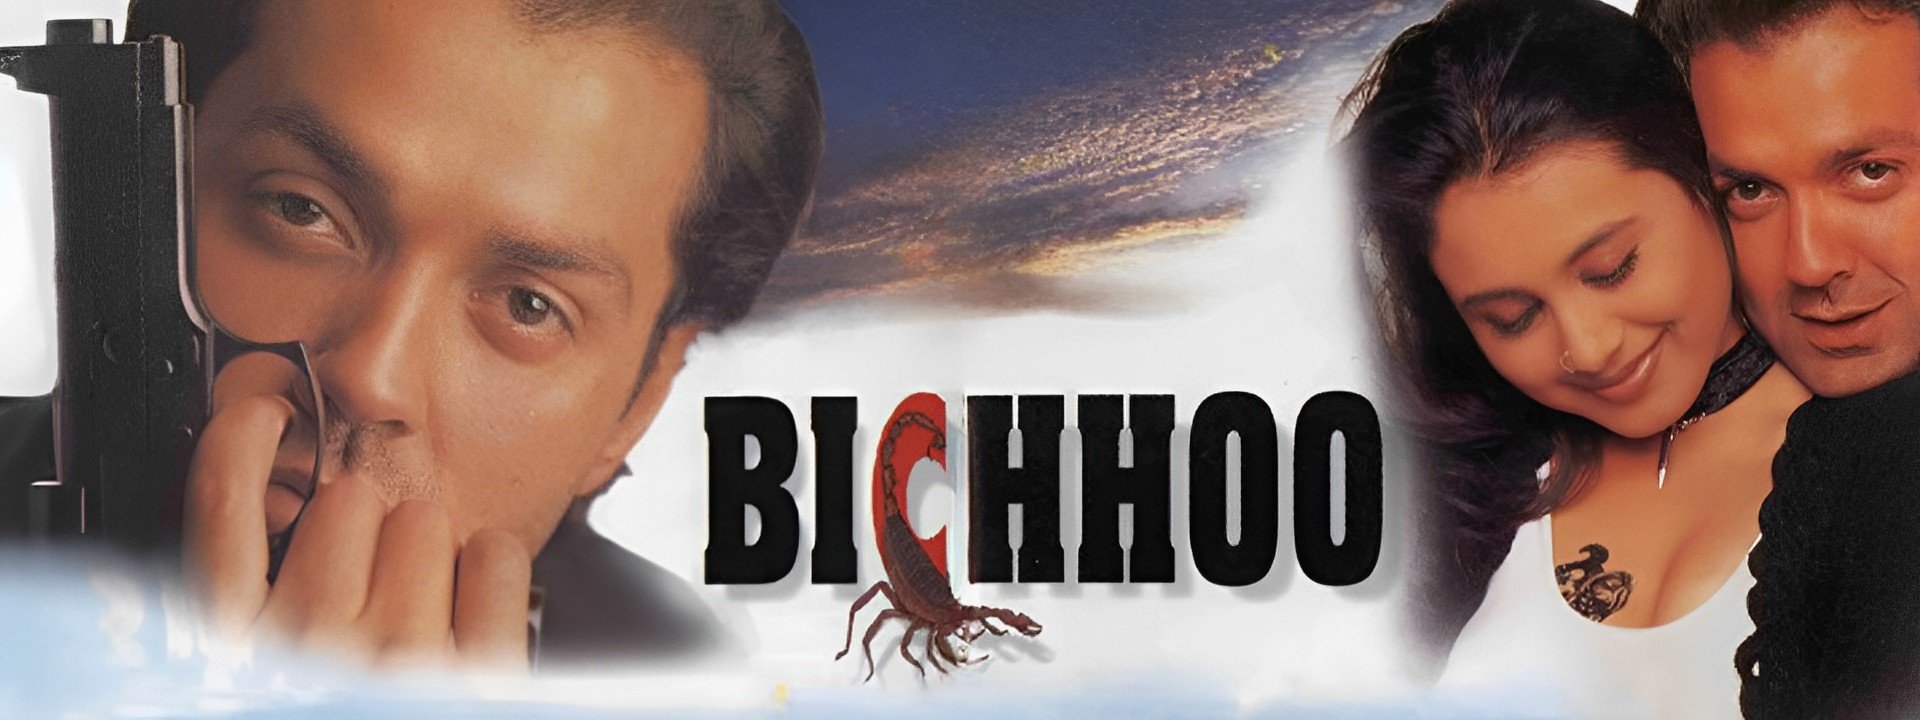 Bichhoo (2000)